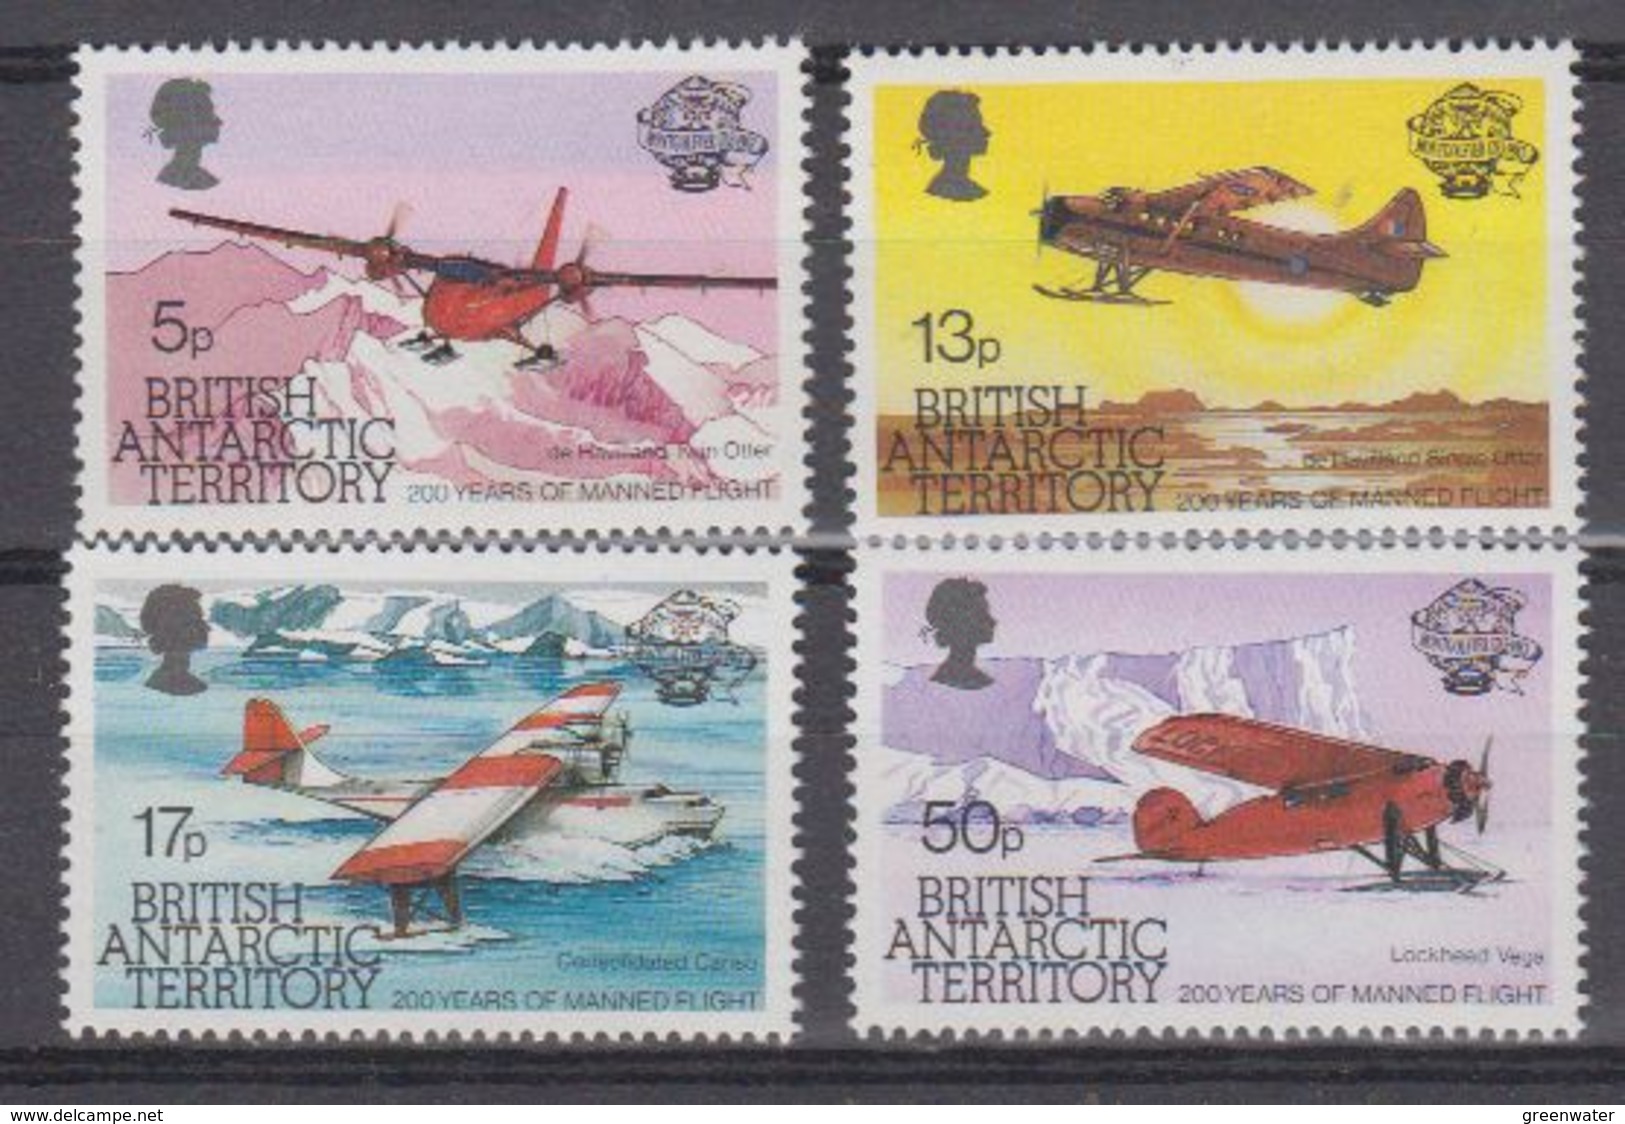 British Antarctic Territory 1983 Manned Flight 4v  ** Mnh (41655) - Ongebruikt